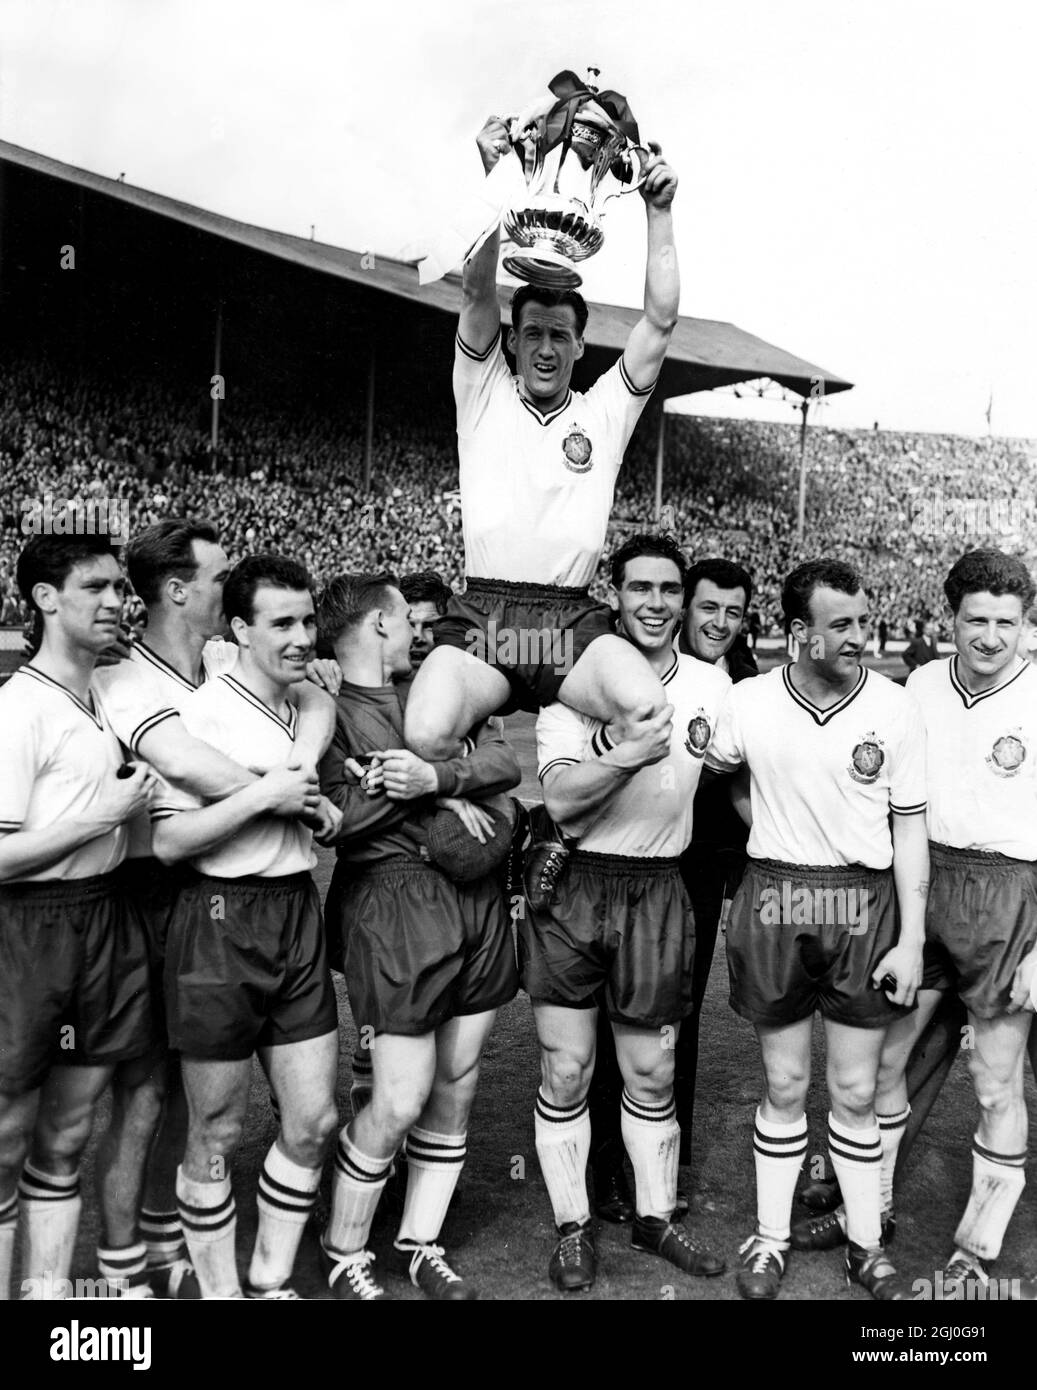 1958 FA Cup Final Manchester United gegen Bolton Wanderers Nat Lofthouse, der Bolton-Mitstreiter und Kapitän, der beide Tore seiner Mannschaft erzielte, wird außerhalb des Feldes geleitet, während er die FA Cup-Trophäe hält. Mai 1958 Stockfoto